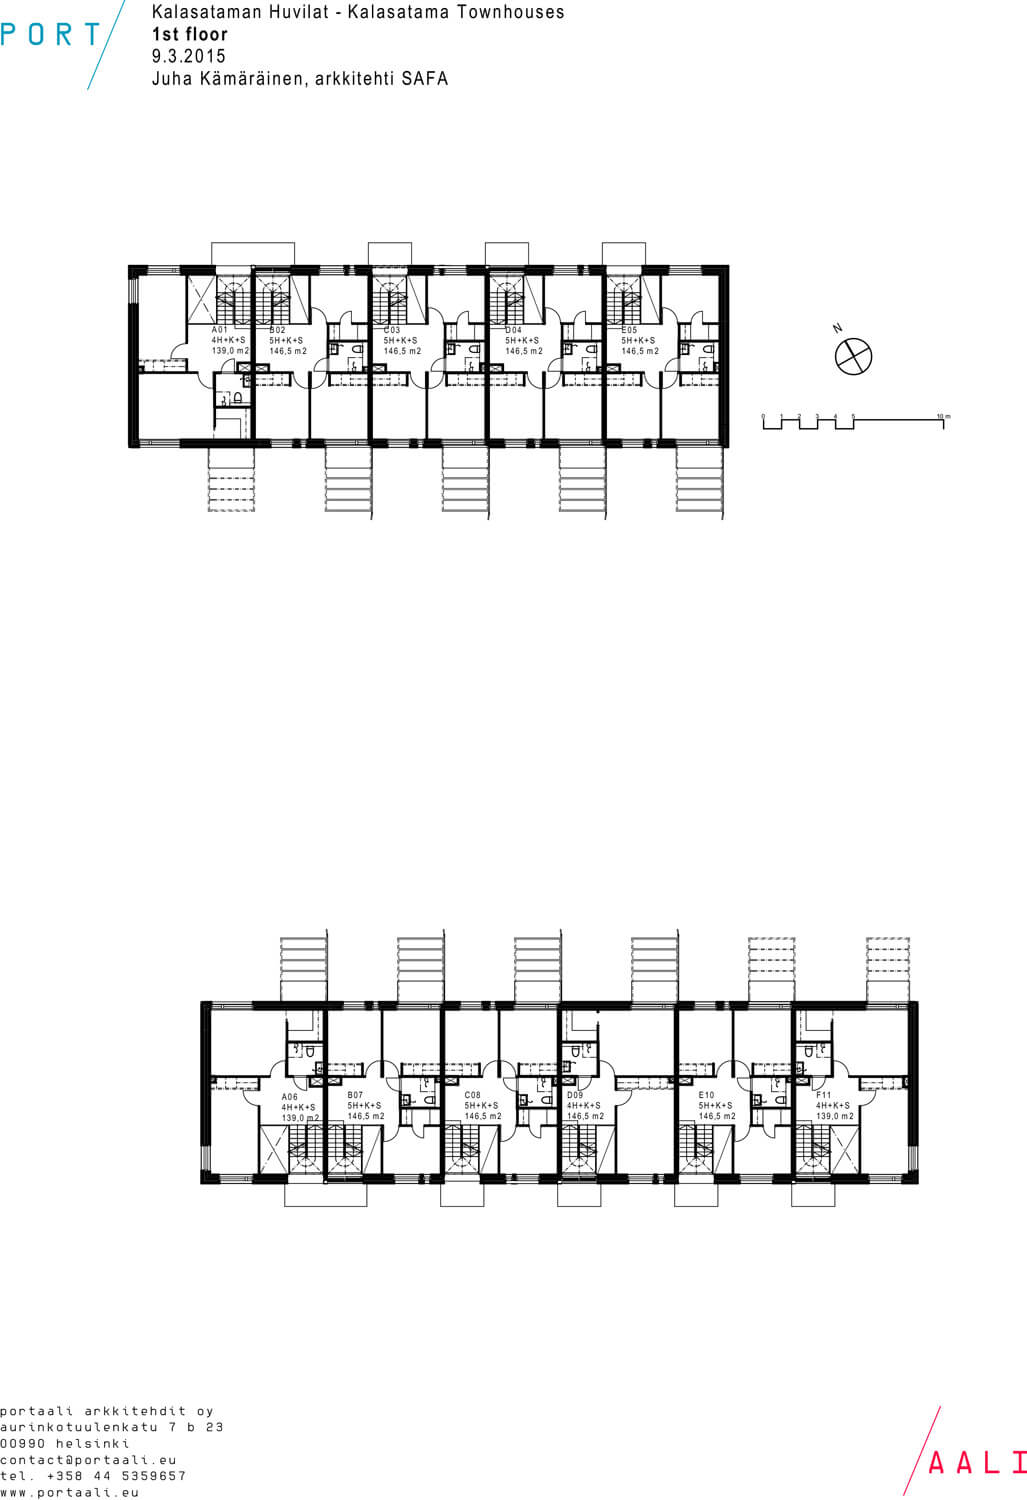 Kalasataman Huvilat Townhouses / PORTAALI architects Ltd + ArkOpen Ltd